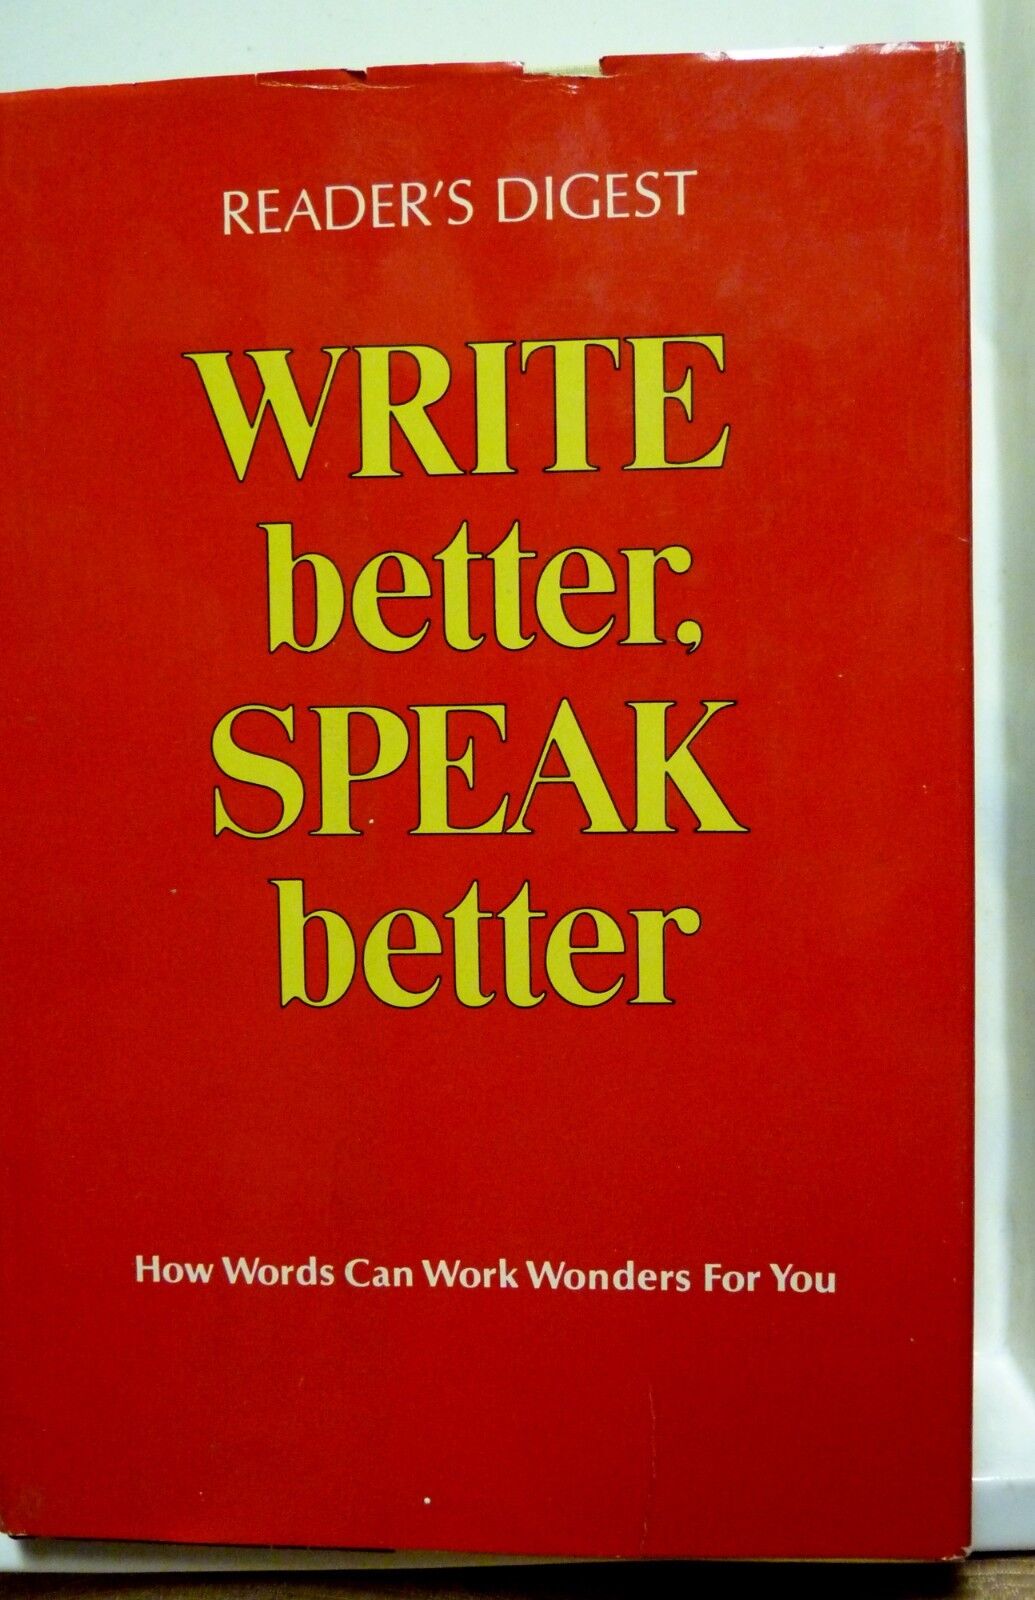 WRITE BETTER SPEAK BETTER